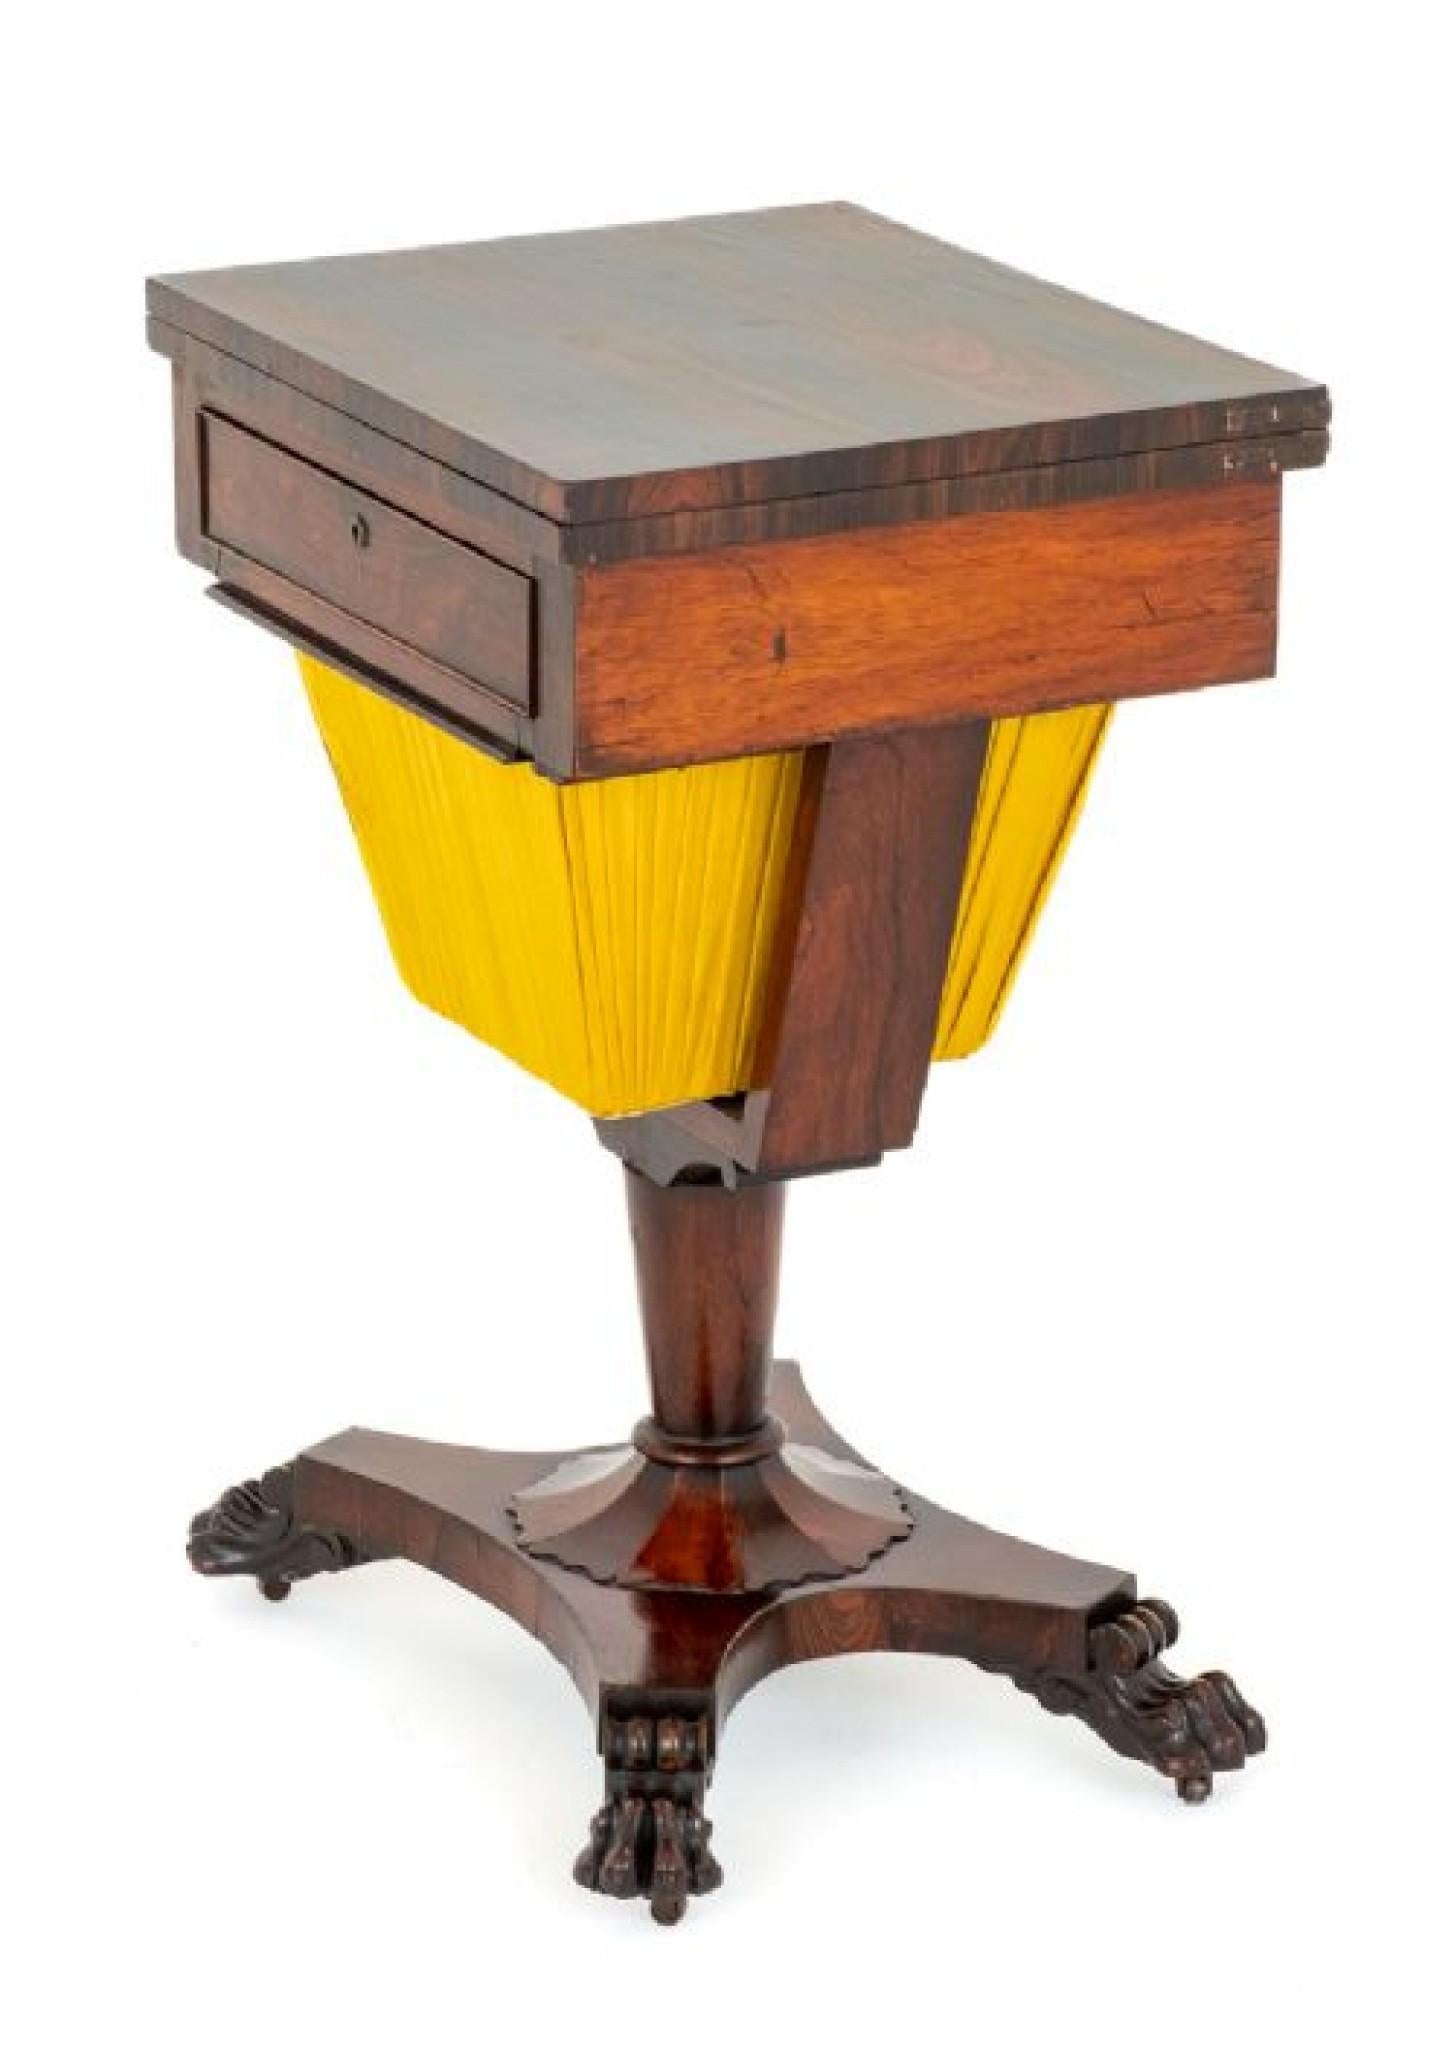 Regency-Näh-/Spieltisch.
Zeitraum Regentschaft
Dieser hübsche Tisch steht auf einer Plattform mit geschnitzten Löwentatzenfüßen.
Der Tisch ruht auf einer gedrechselten Säule mit einem geformten Sockel.
Der Nähkorb wurde kürzlich neu gefüttert.
Über